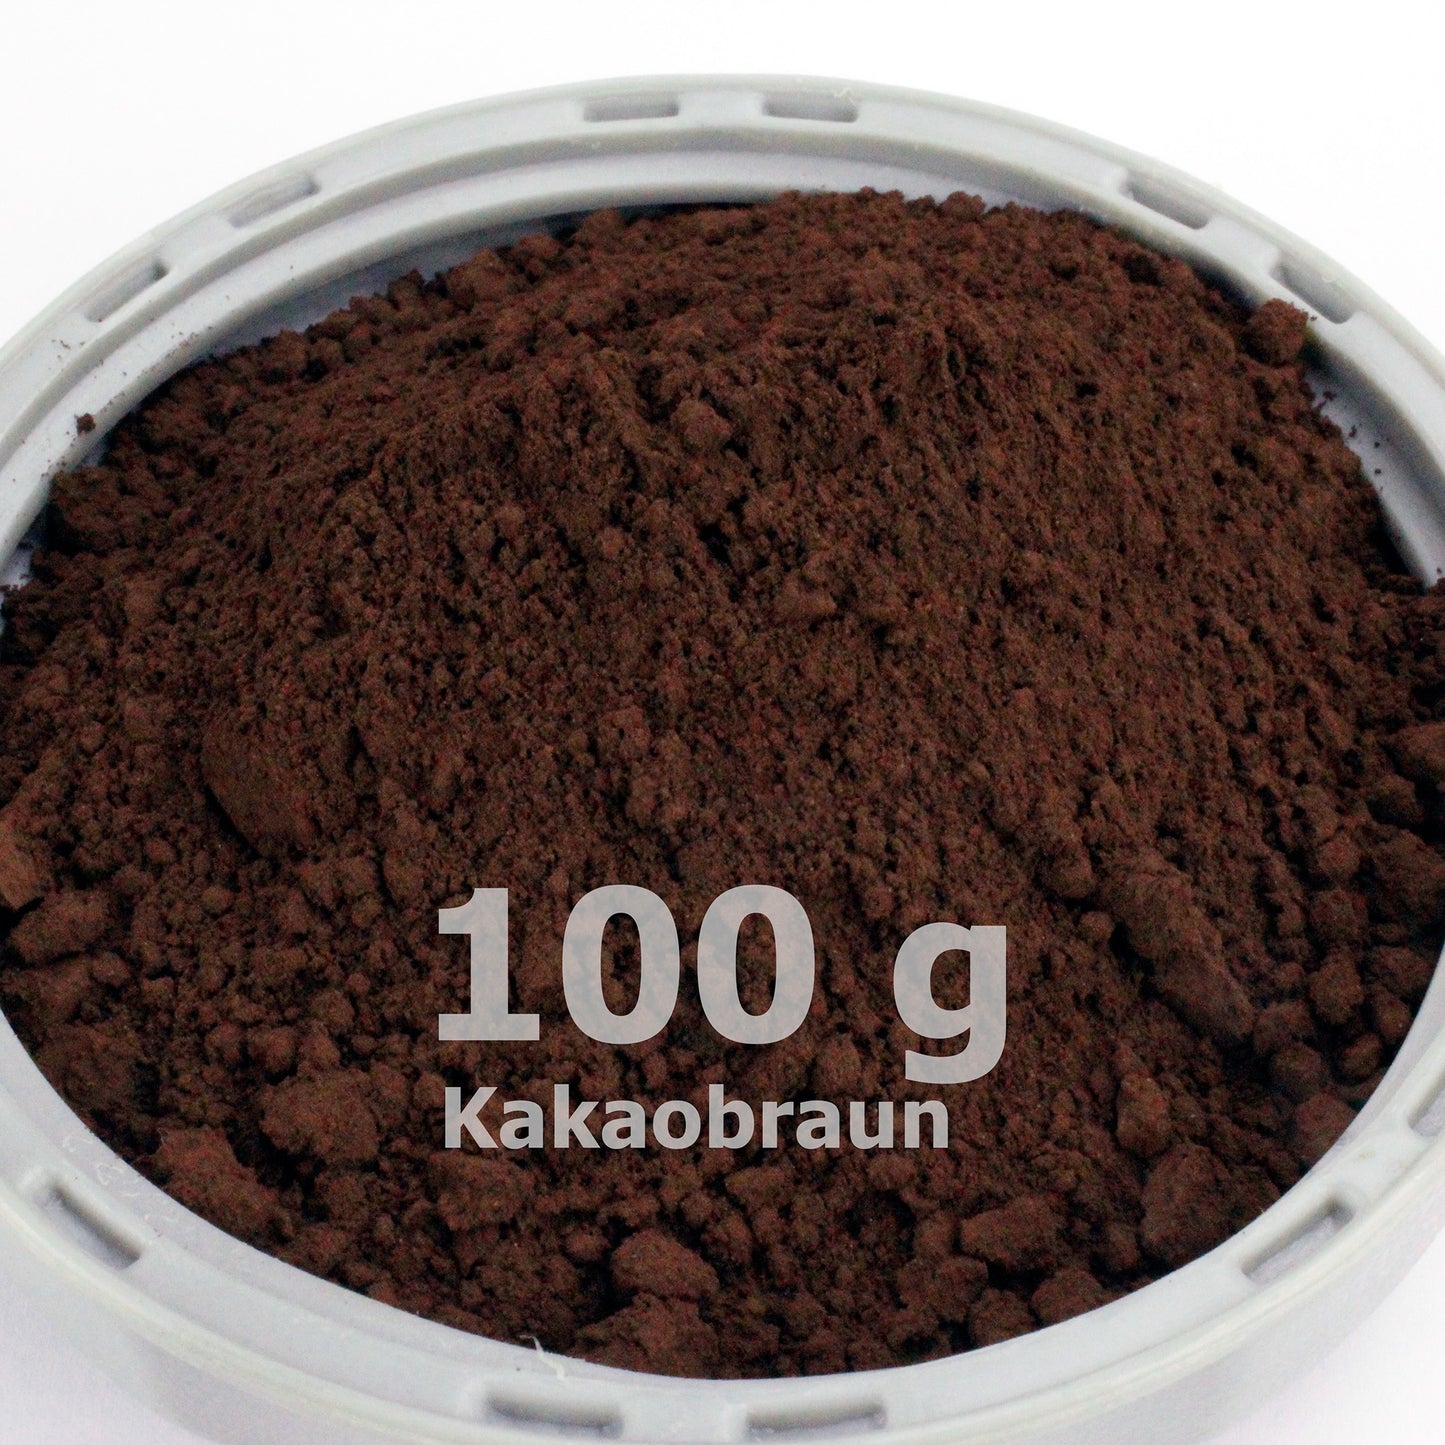 Kakaobraunpulver für Beton / Zement / Gips - 100g Probepackung